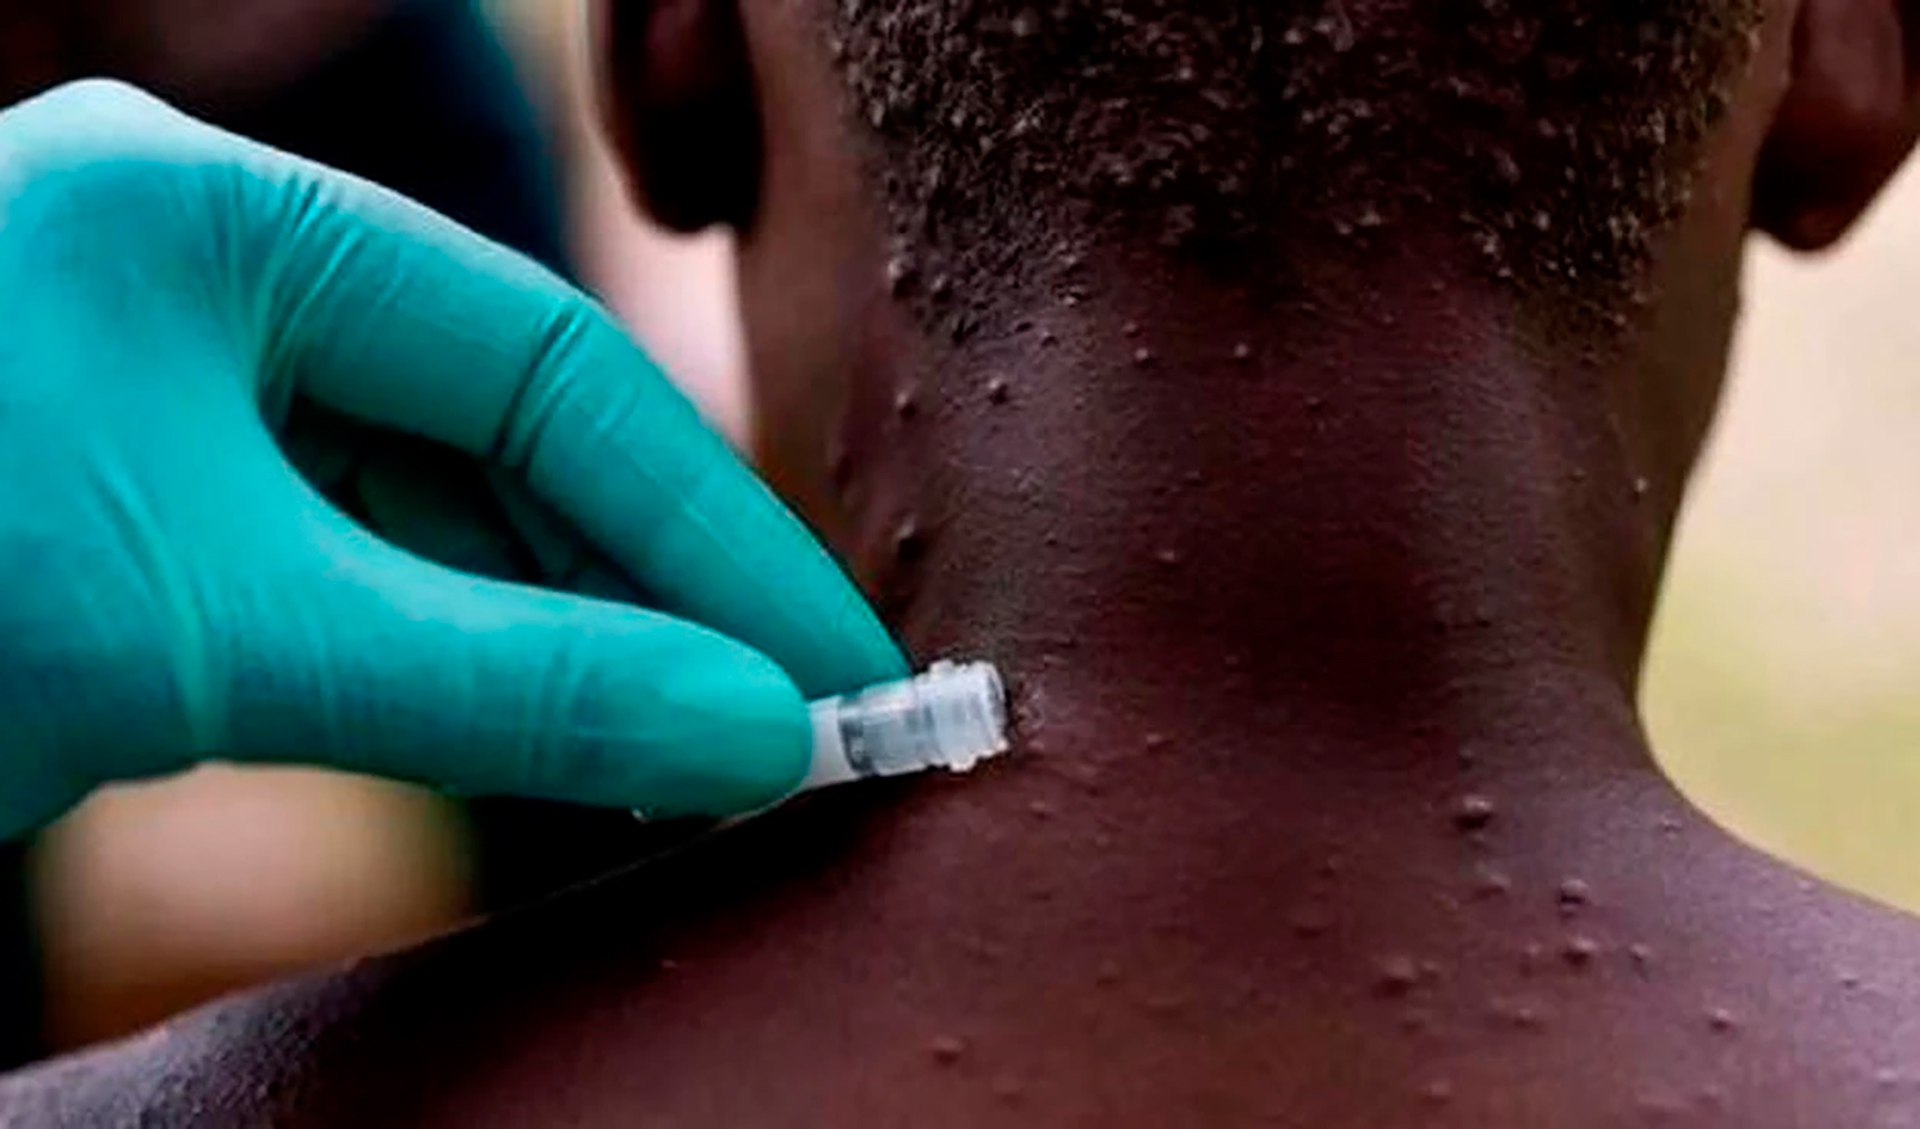 Lesiones en la piel en torno a la enfermedad llamada viruela del mono, que ha provocado una transmisión rápida en todo el mundo.
(Nigeria Centre for Disease Control)